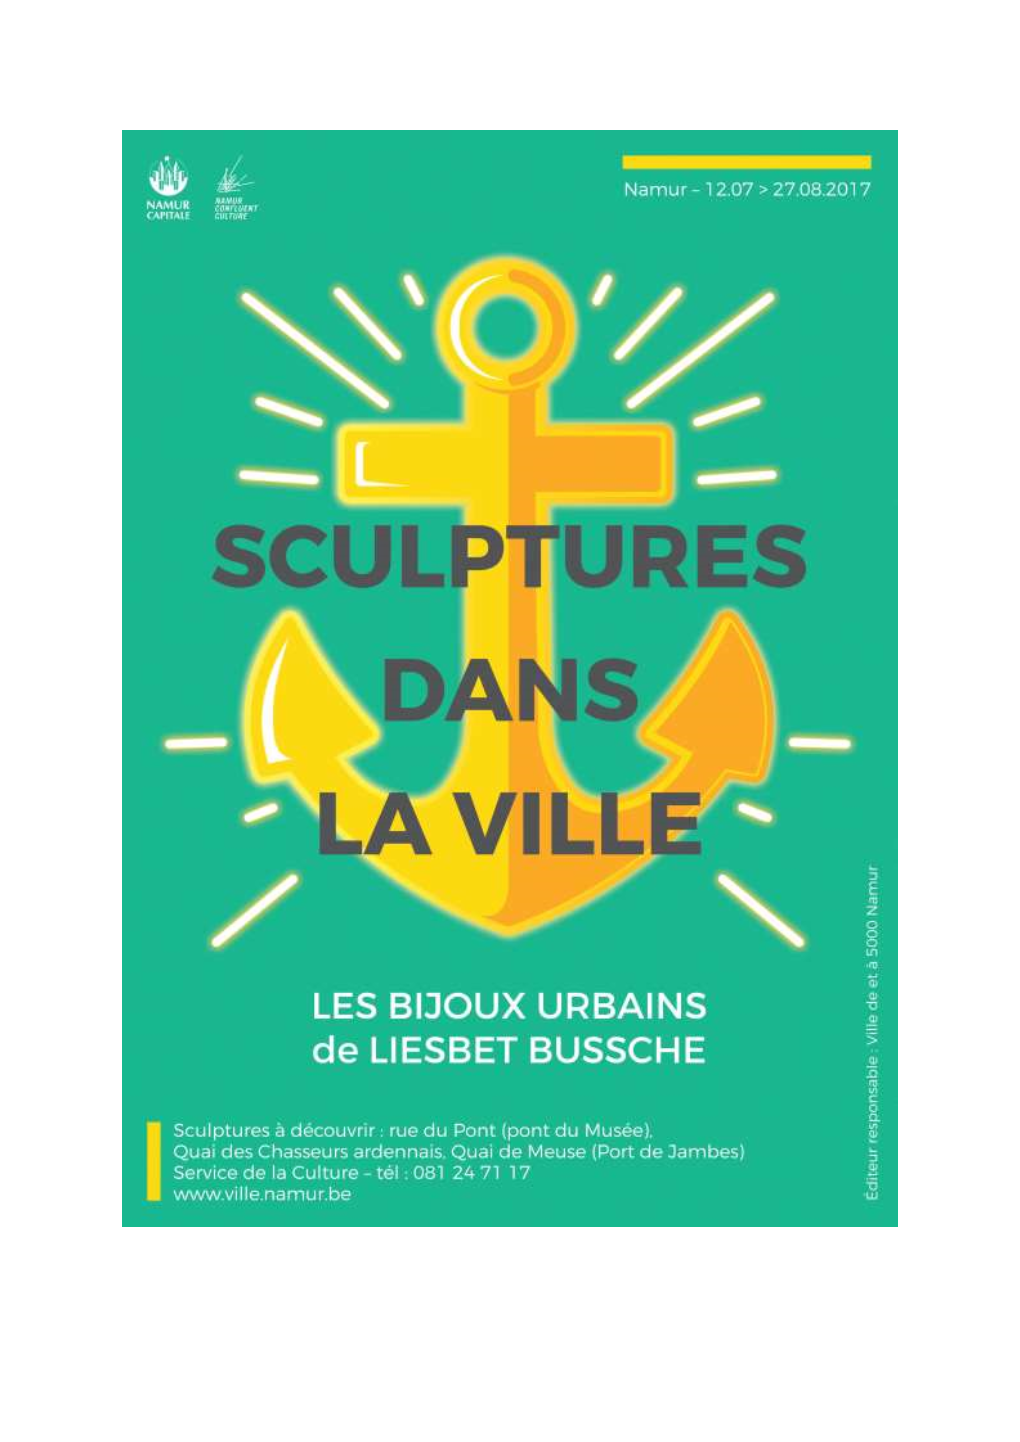 Sculptures Dans La Ville Inauguration Des Bijoux Urbains De Liesbet Bussche 12 Juillet 2017 – Quai Des Chasseurs Ardennais À Namur